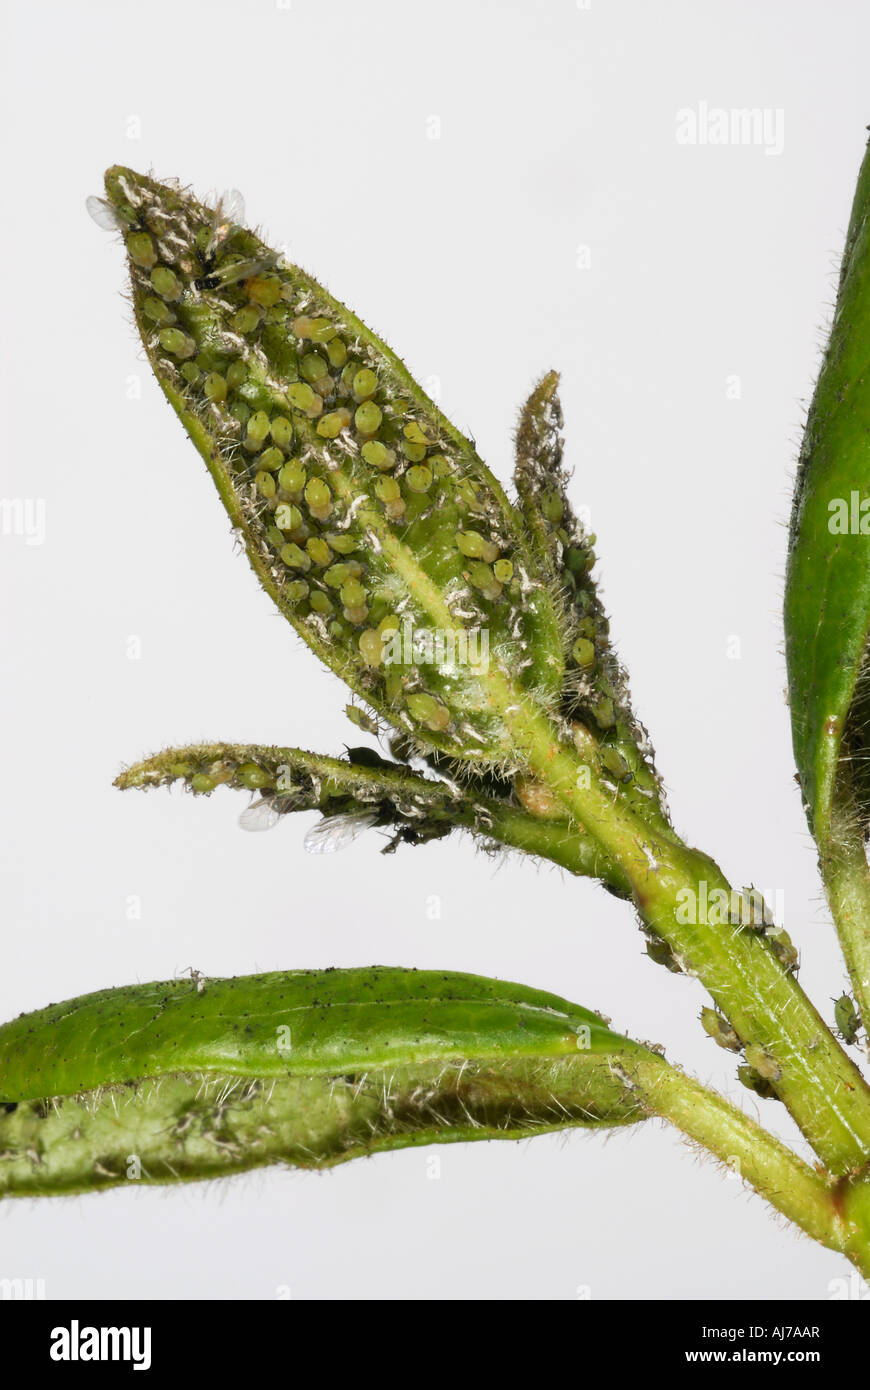 Une infestation de pucerons non identifiés sur la face inférieure d'un Viburnum leaf Banque D'Images